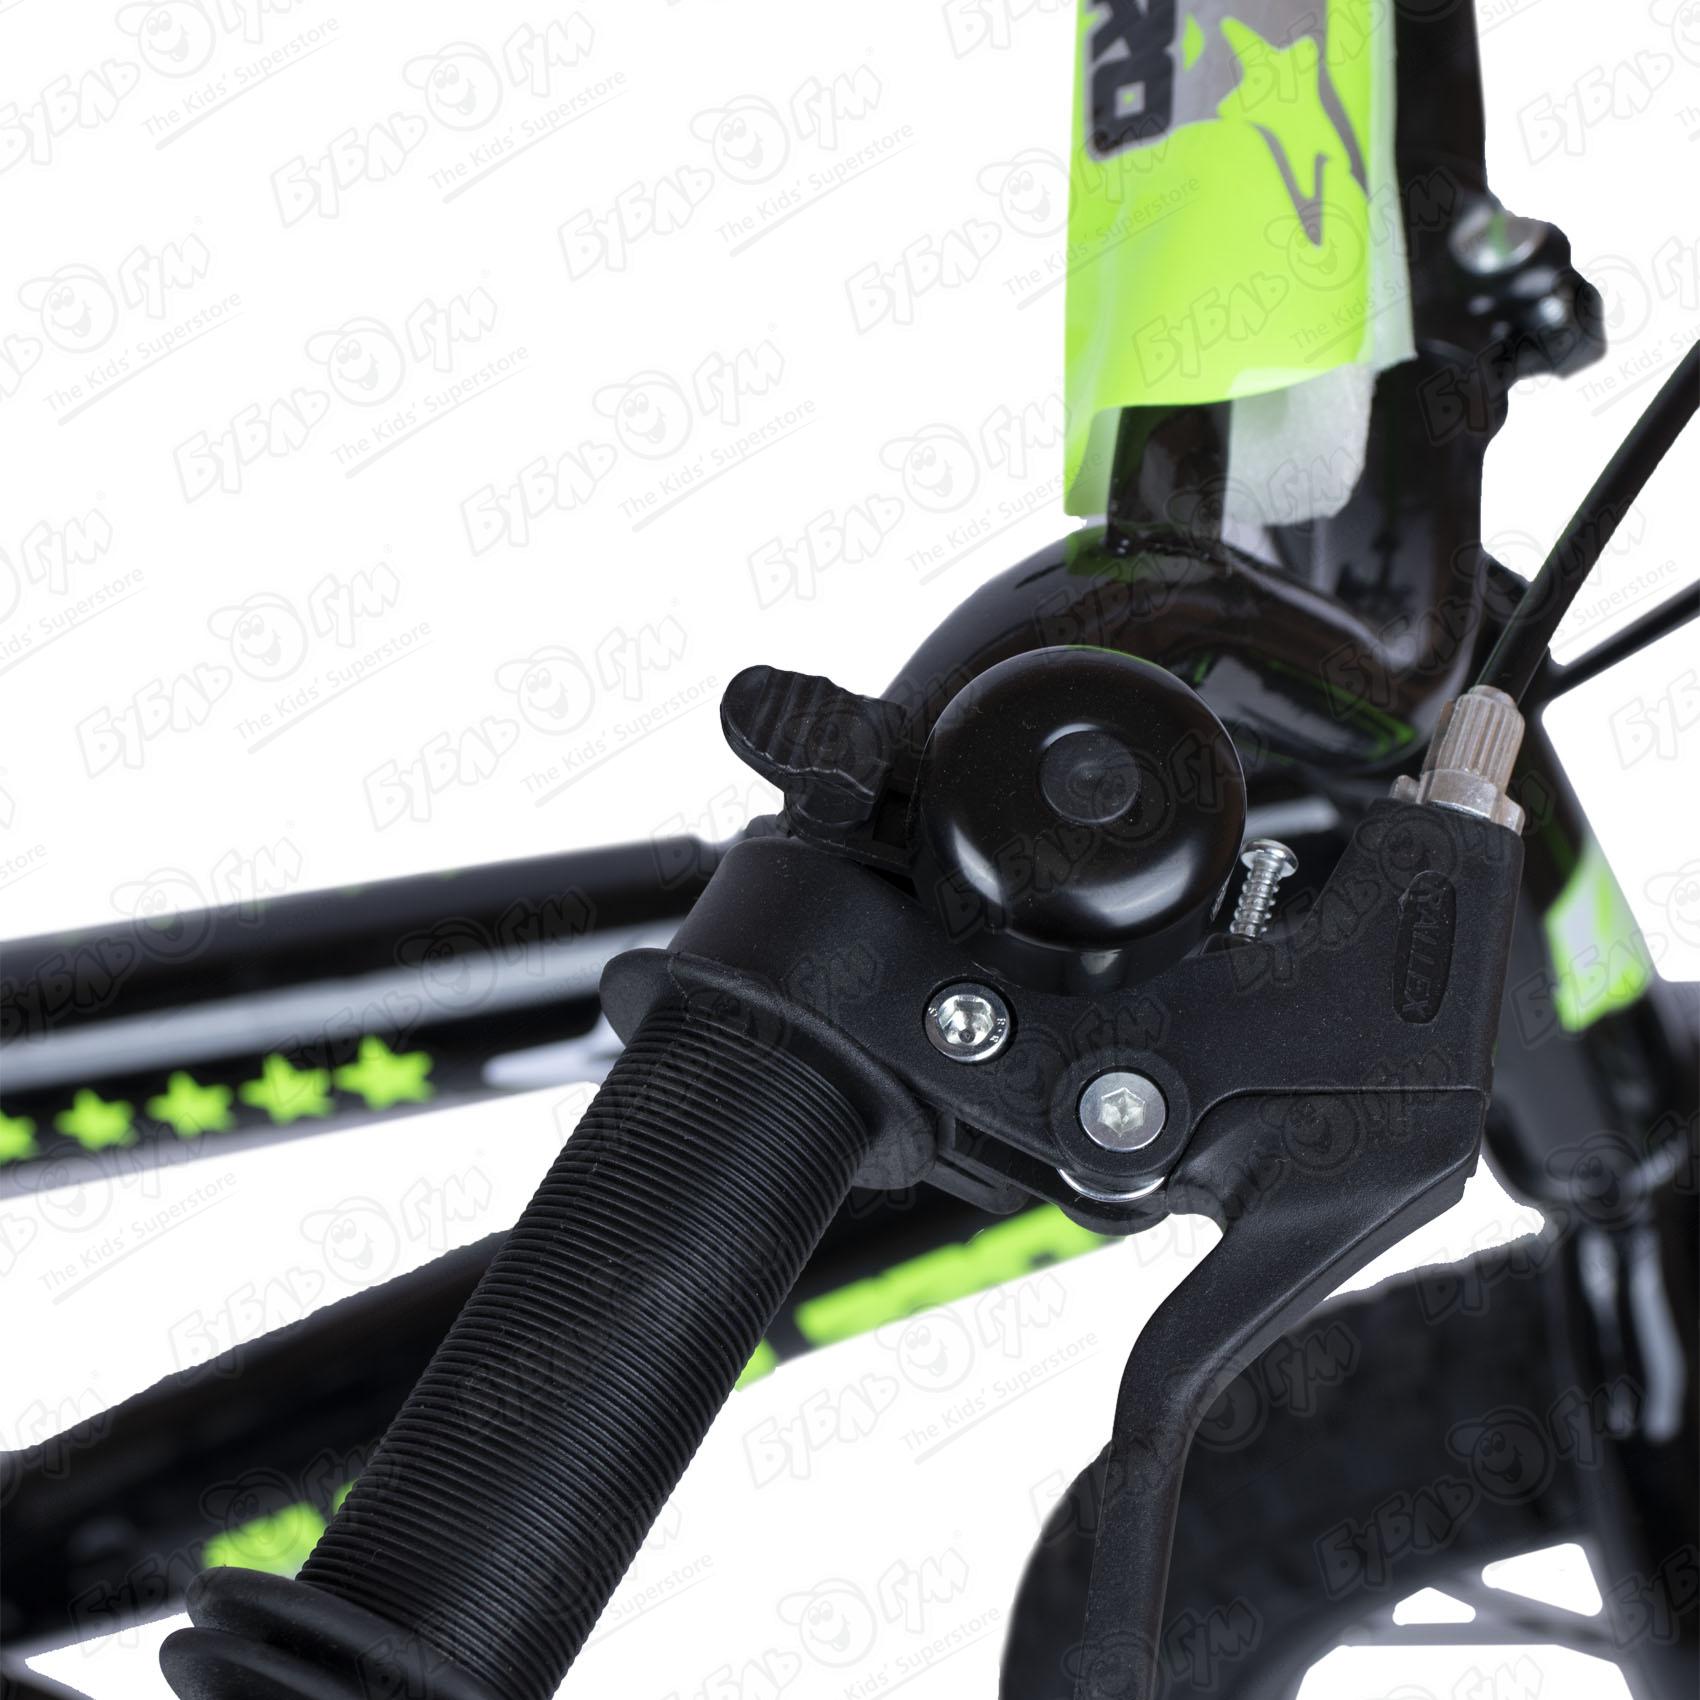 Велосипед Champ Pro детский трехколесный B16 10кг, цвет черный - фото 7